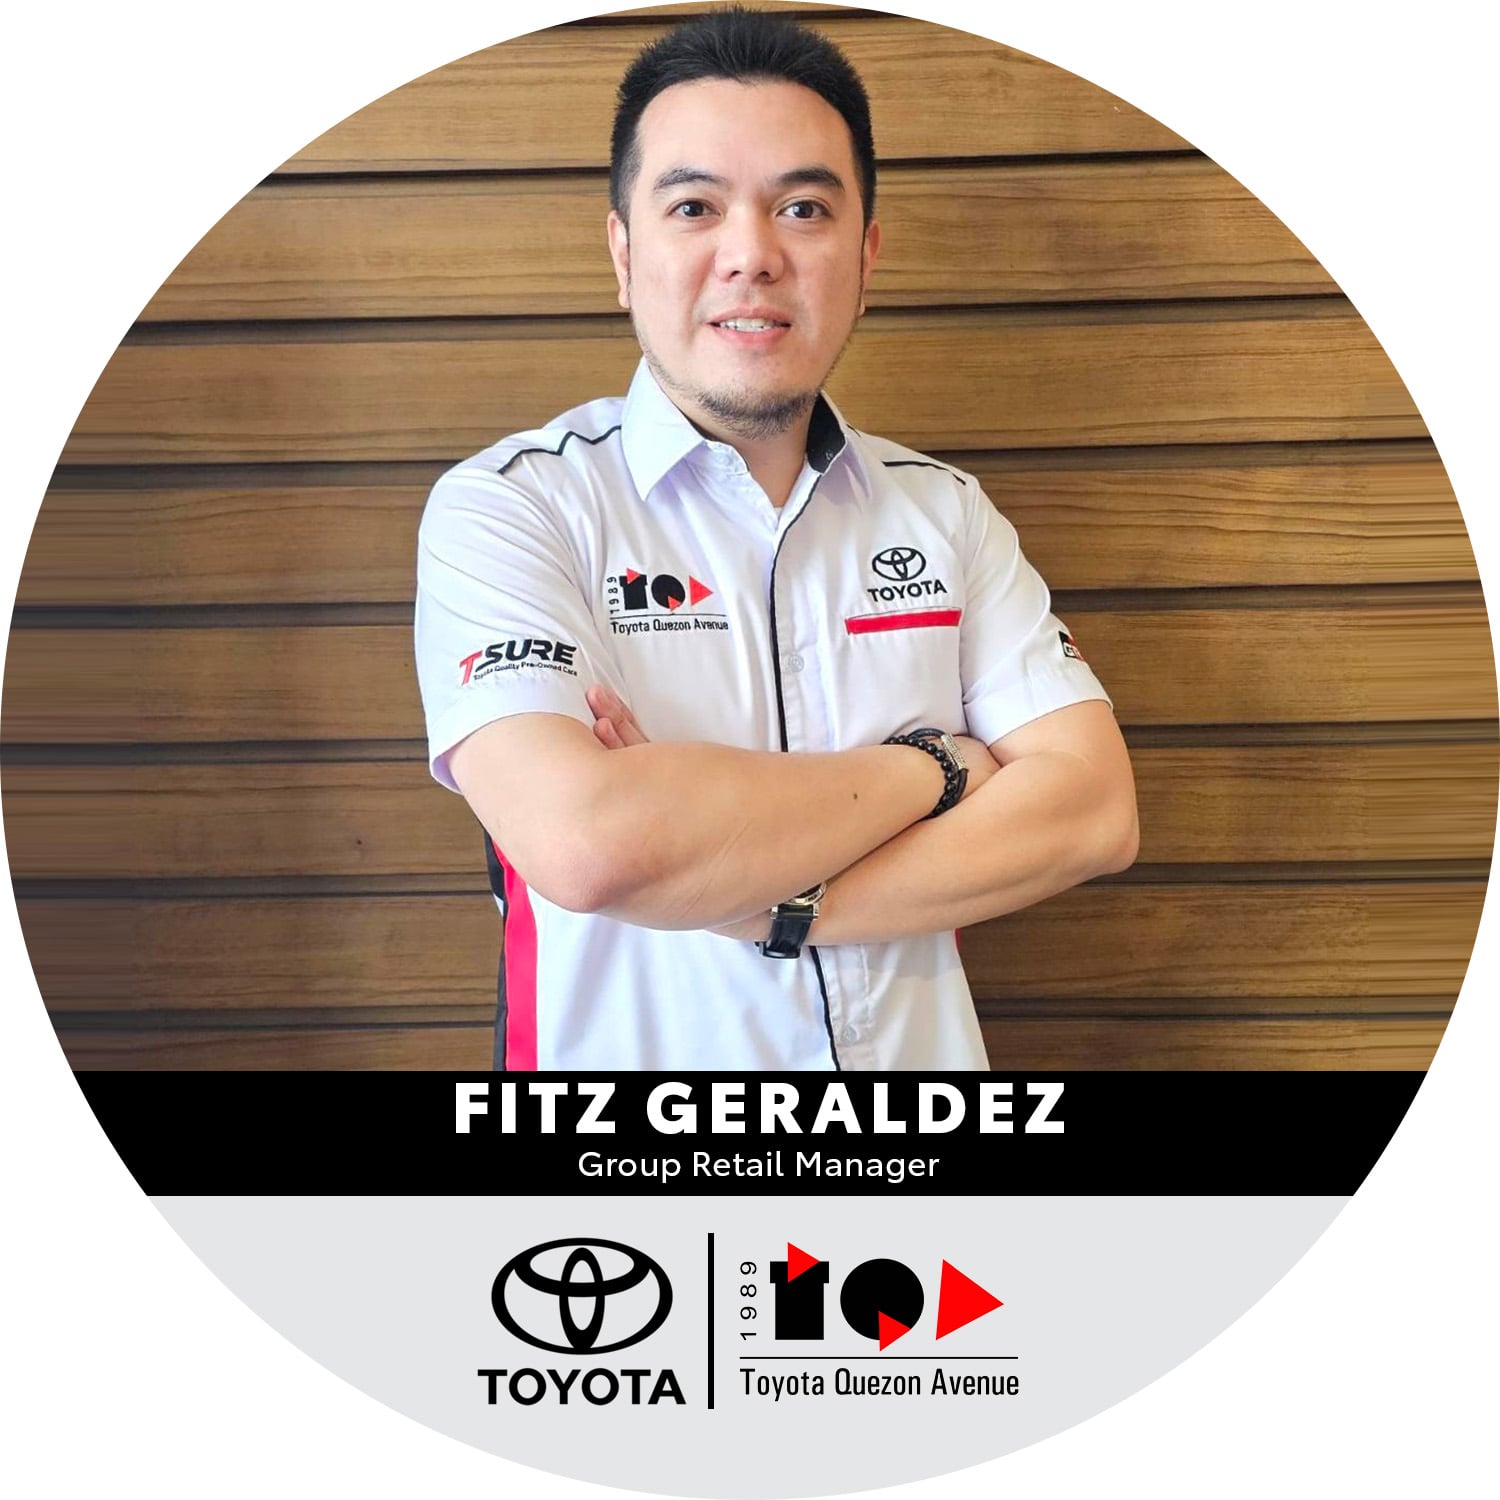 Certified Toyota Marketing Professionals - Fitz Geraldez